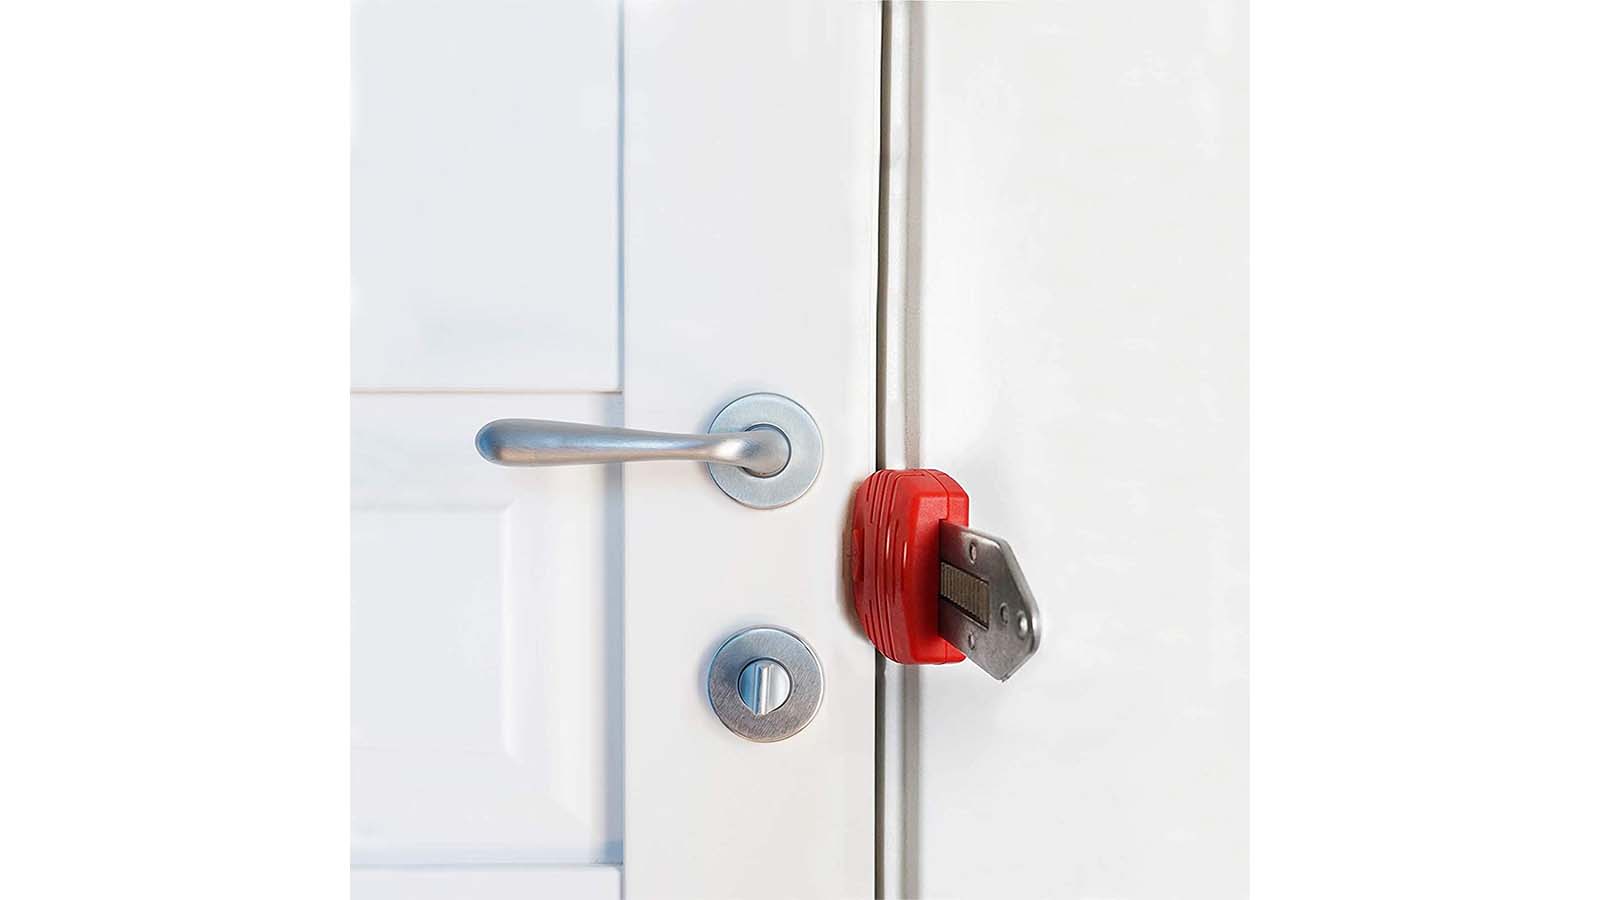 Portable Door Lock Home Security Hotel Door Locks for Travelers Door Safety  Locks from Inside Bedroom Apartment Security Travel Gifts Essentials